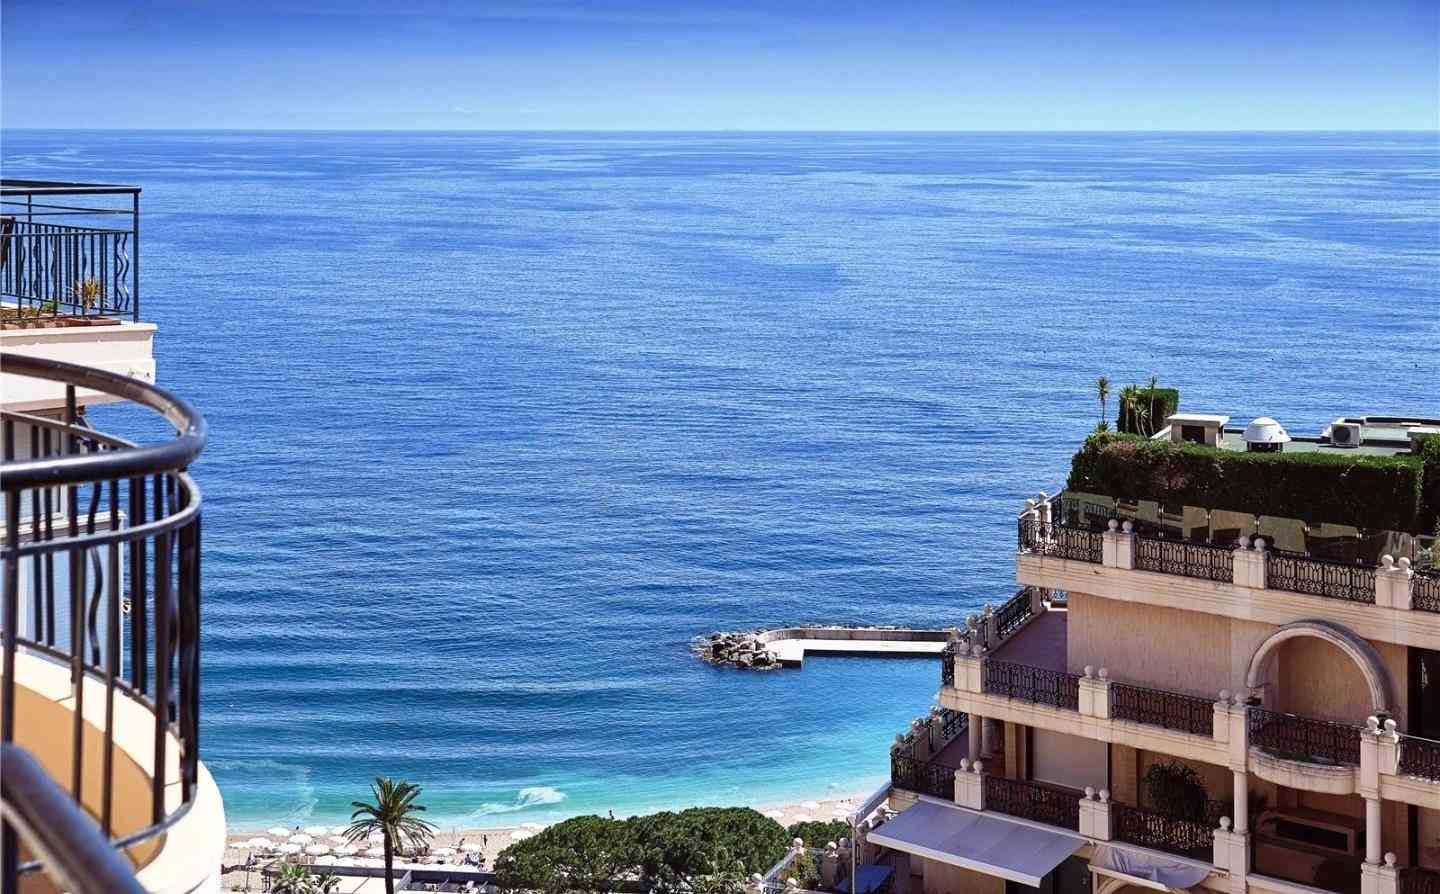 Une vue spectaculaire sur les immeubles bordant la côte avec la mer Méditerranée en arrière-plan.